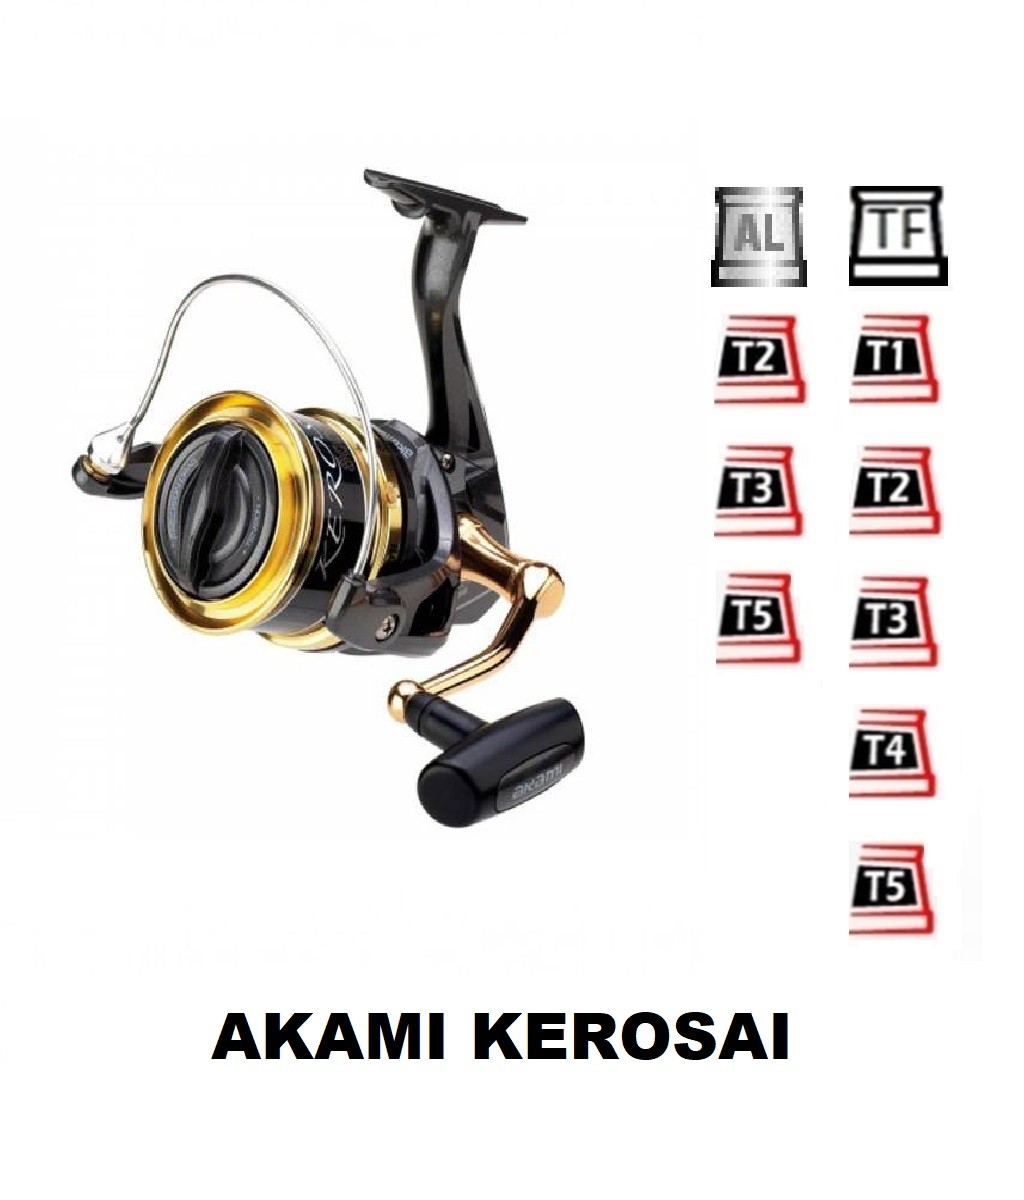 Ersatzpule kompatible mit Akami Kerosai